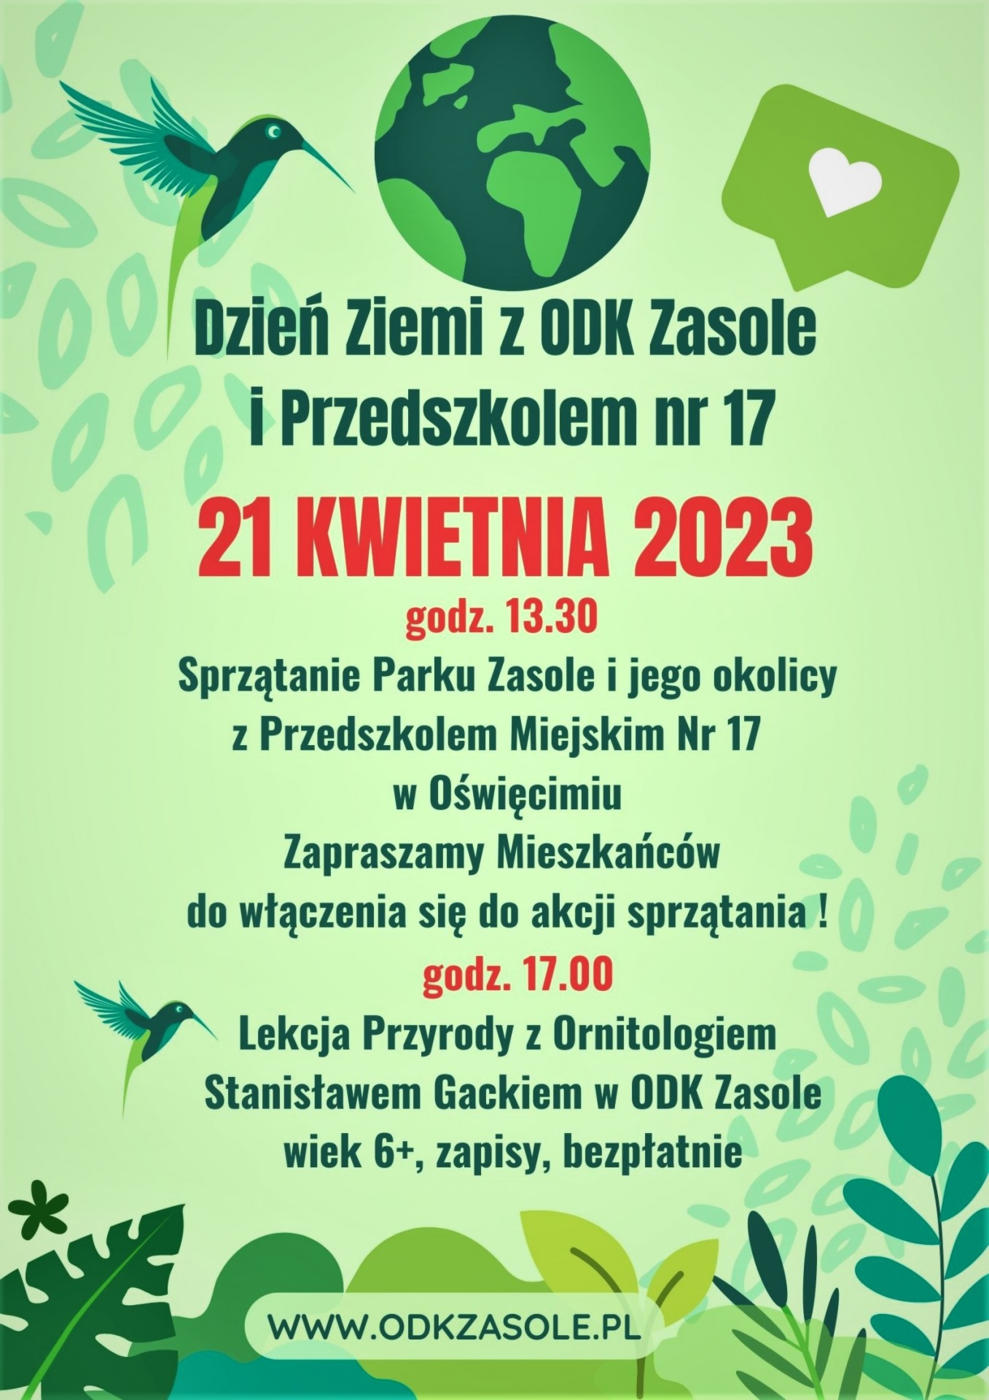 Osiedlowy Dom Kultury Zasole zaprasza na Dzień Ziemi z przedszkolem nr 17. 21 kwietnia będzie można wspólnie sprzątać park Zasole i okolice.